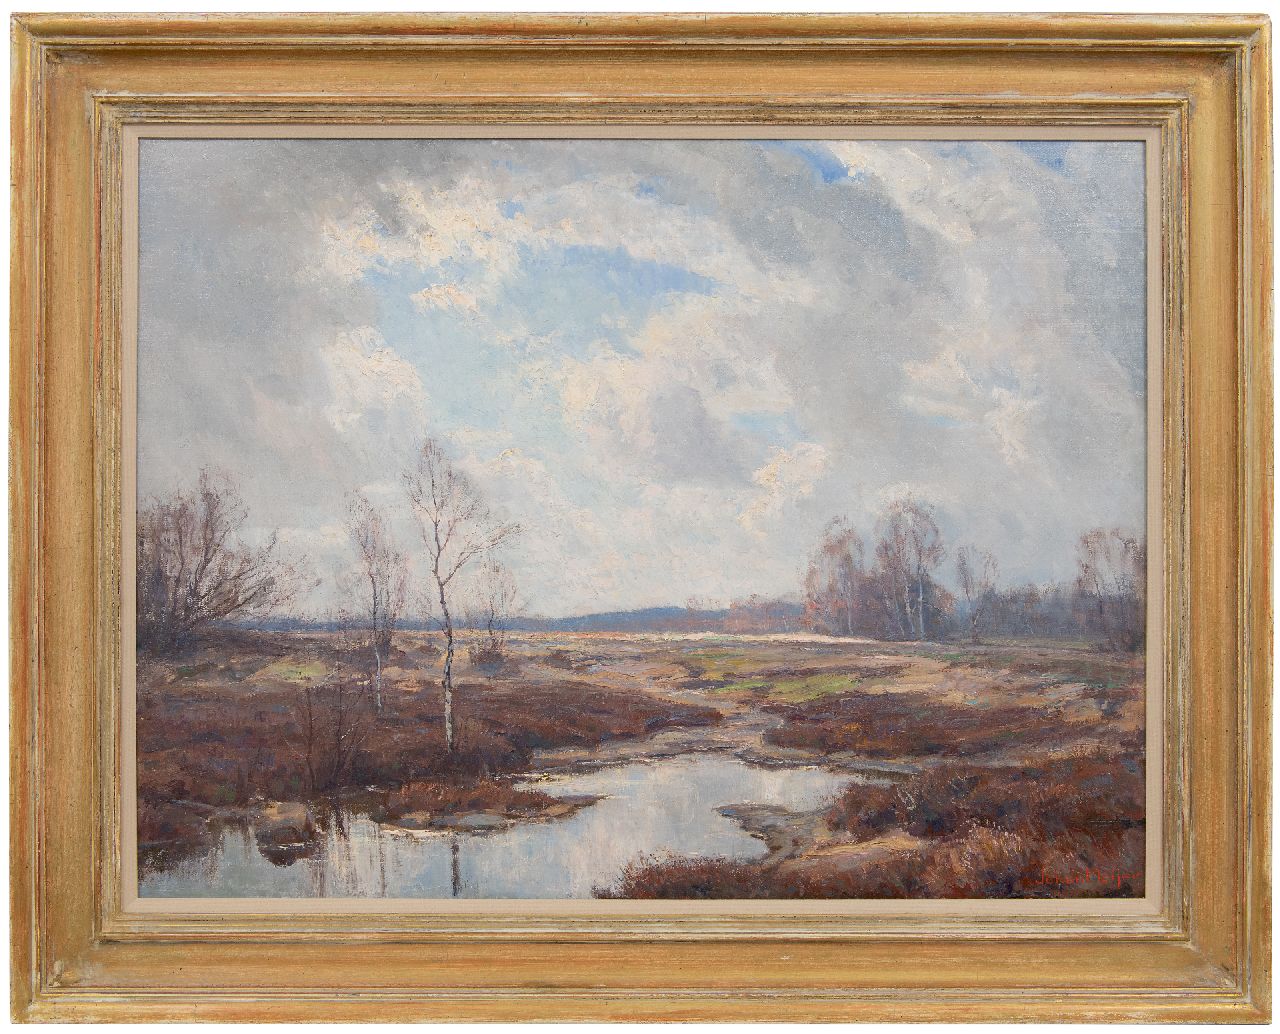 Meijer J.  | Johannes 'Johan' Meijer | Schilderijen te koop aangeboden | Heideplas, olieverf op doek 61,1 x 81,4 cm, gesigneerd rechtsonder en verso